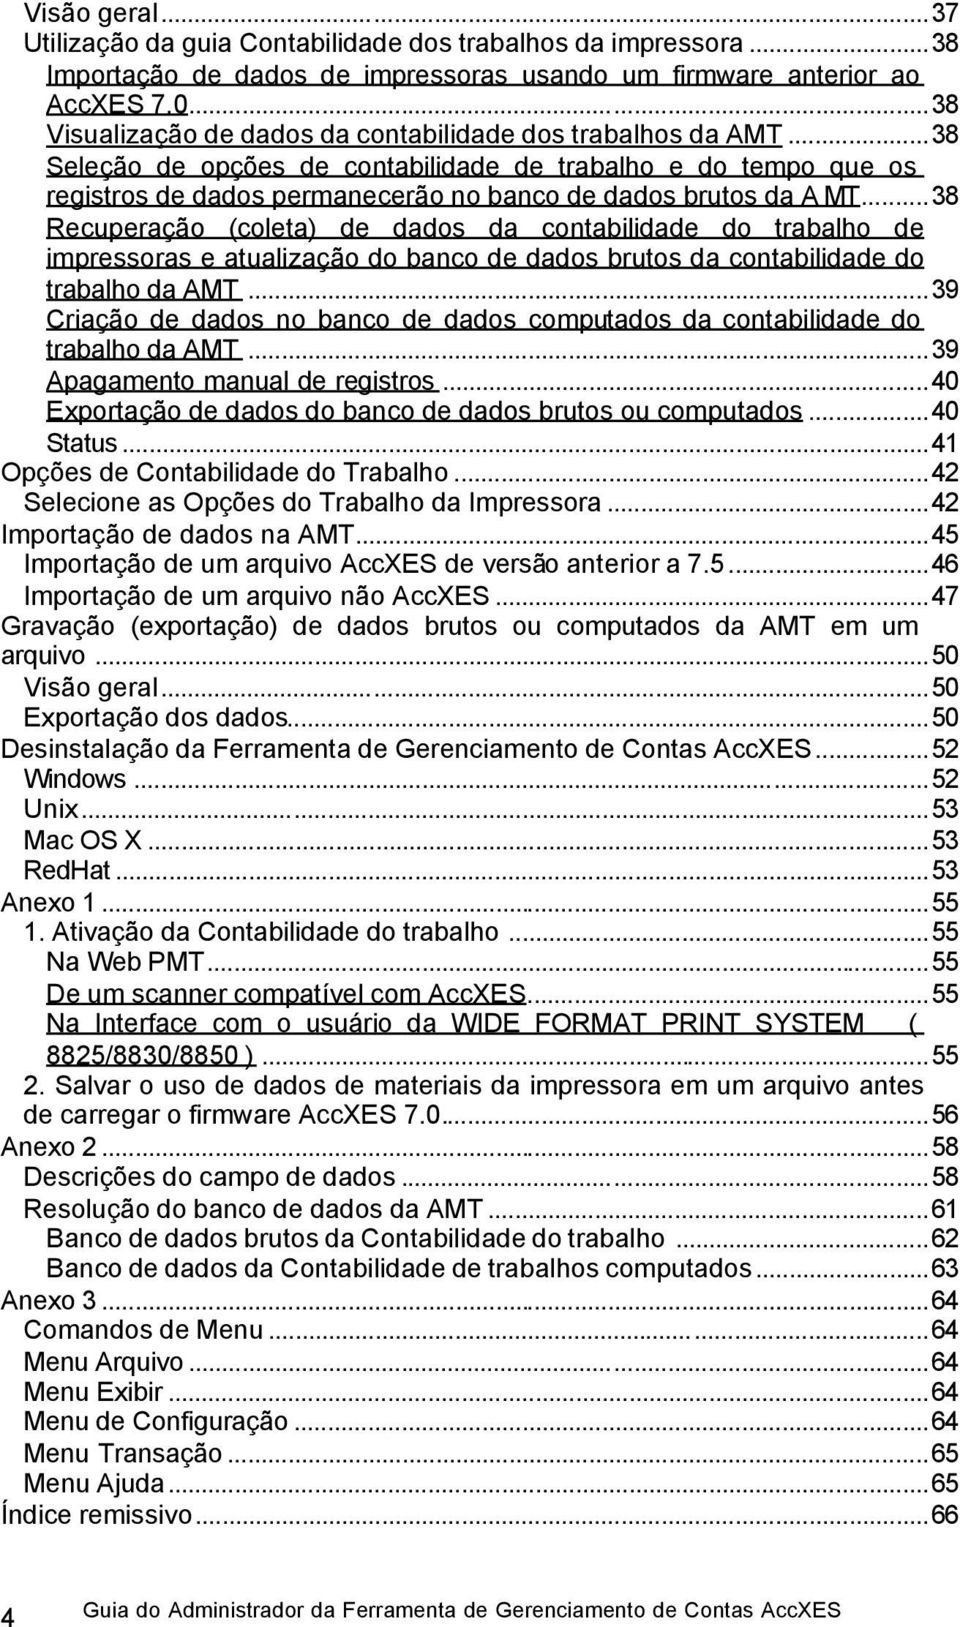 ..38 Recuperação (coleta) de dados da contabilidade do trabalho de impressoras e atualização do banco de dados brutos da contabilidade do trabalho da AMT.